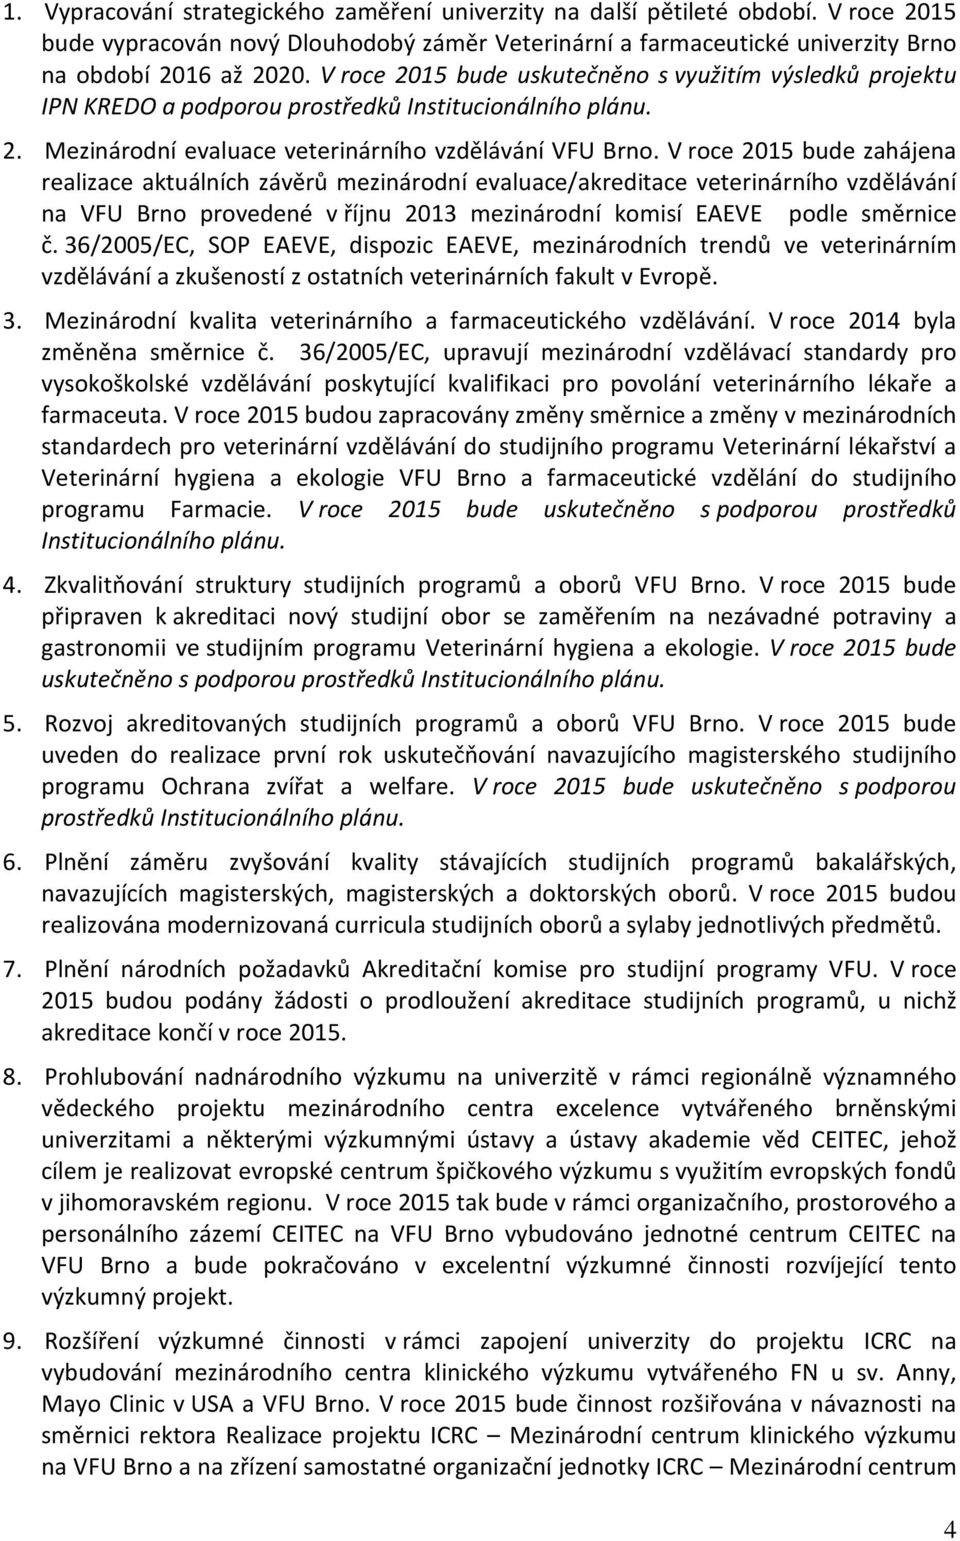 V roce 2015 bude zahájena realizace aktuálních závěrů mezinárodní evaluace/akreditace veterinárního vzdělávání na VFU Brno provedené v říjnu 2013 mezinárodní komisí EAEVE podle směrnice č.